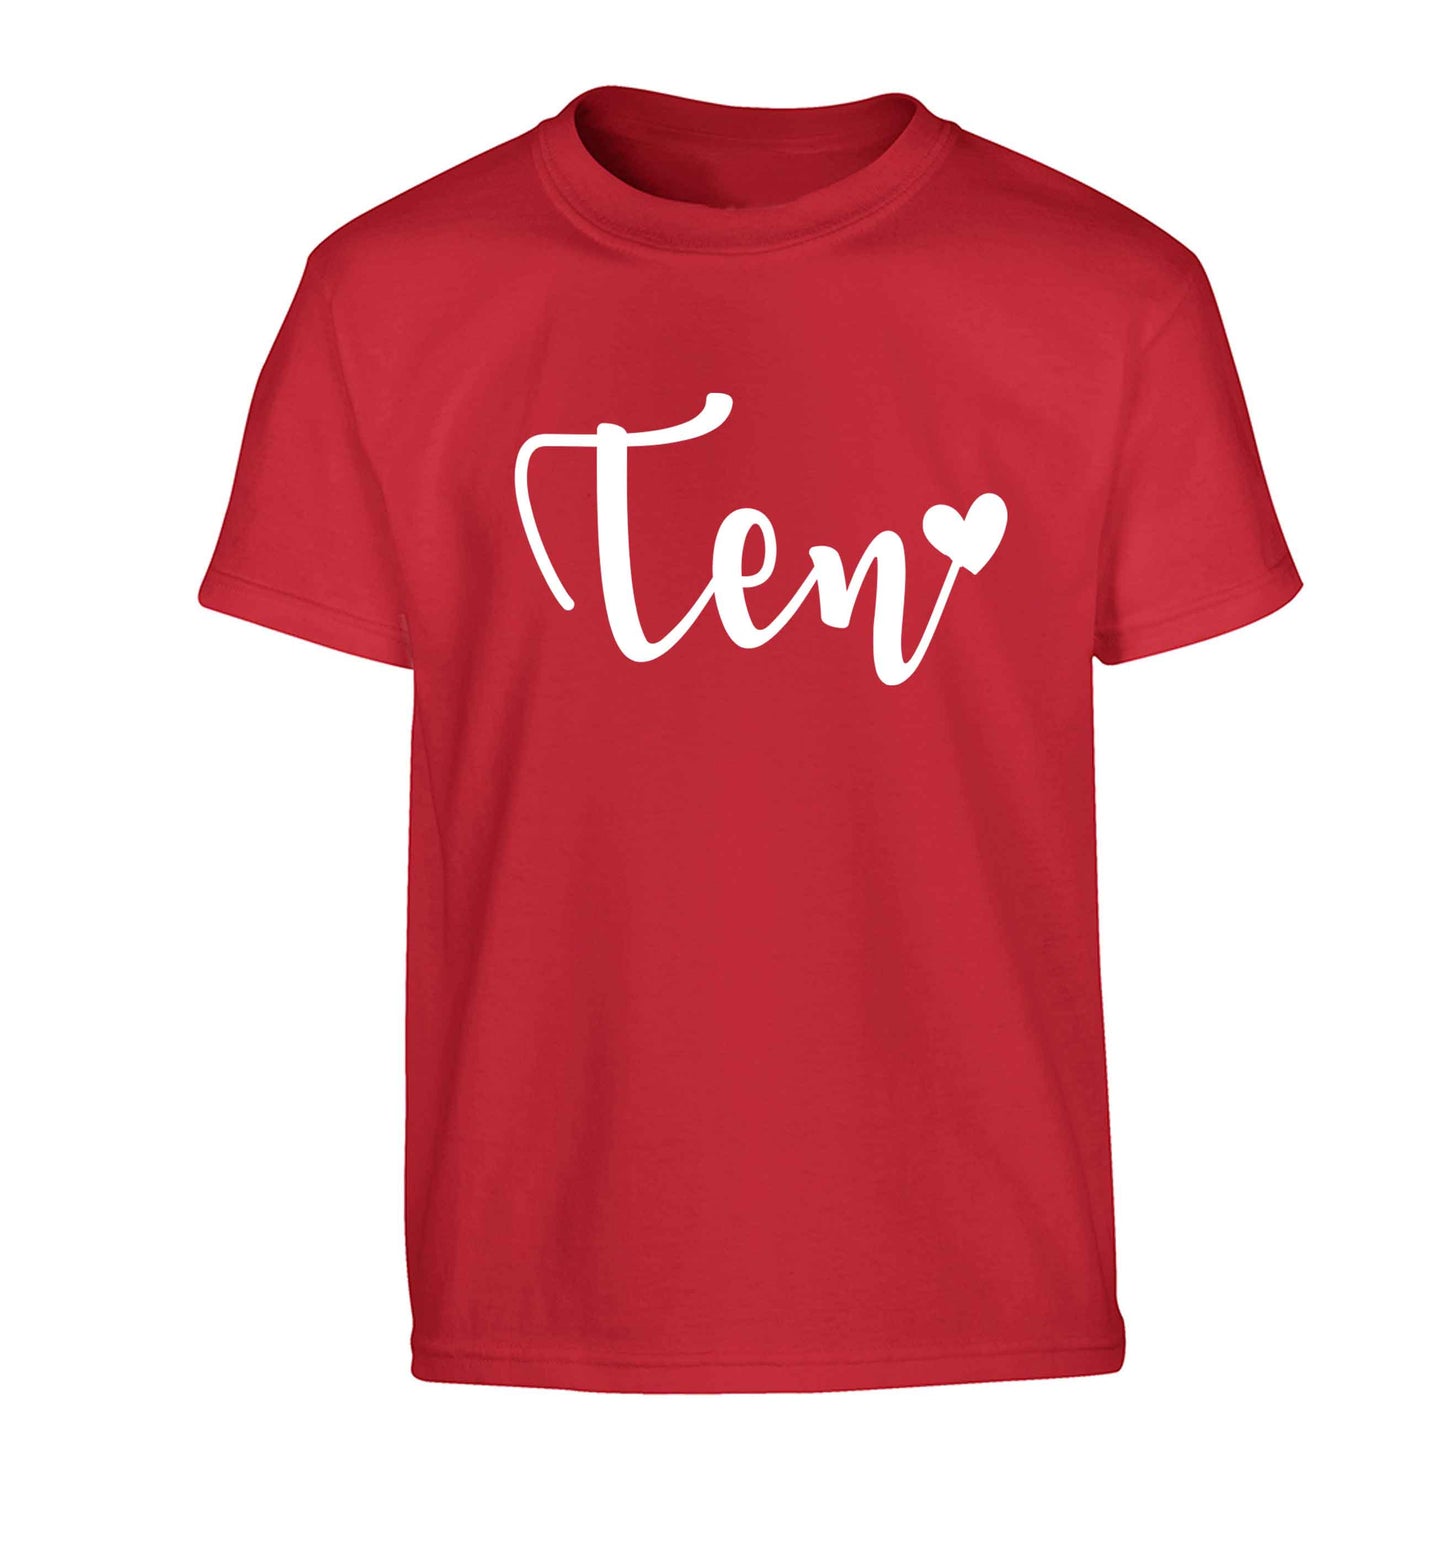 Ten and heart Children's red Tshirt 12-13 Years